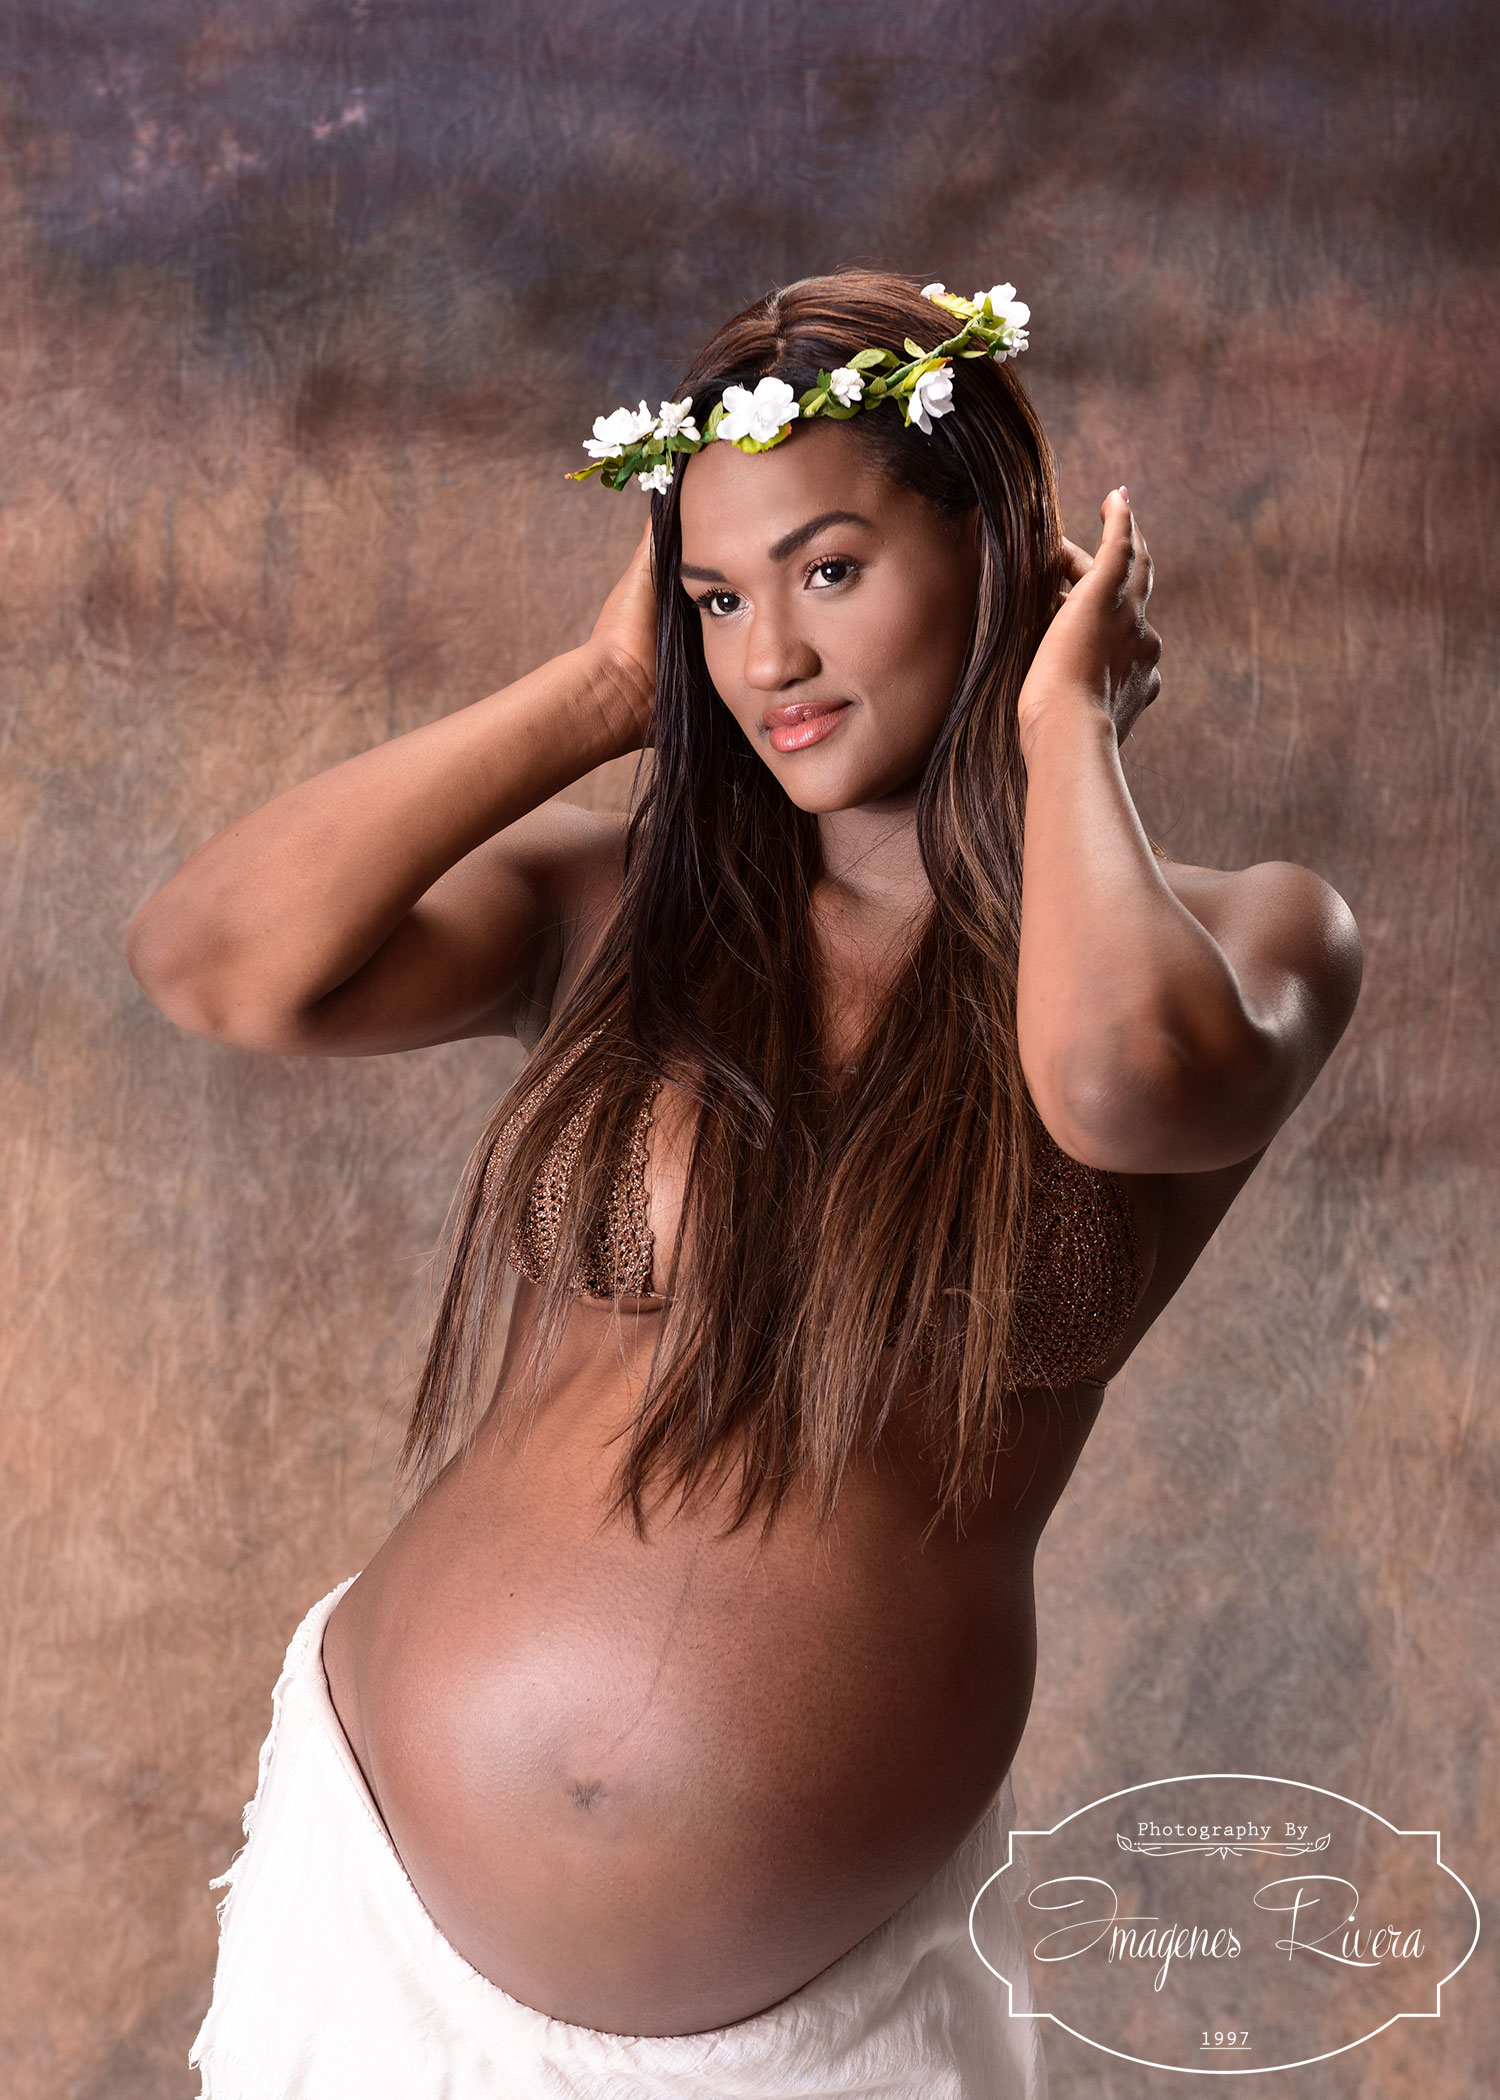 ♥ Maternity session in a Miami studio|Imagenes Rivera ♥